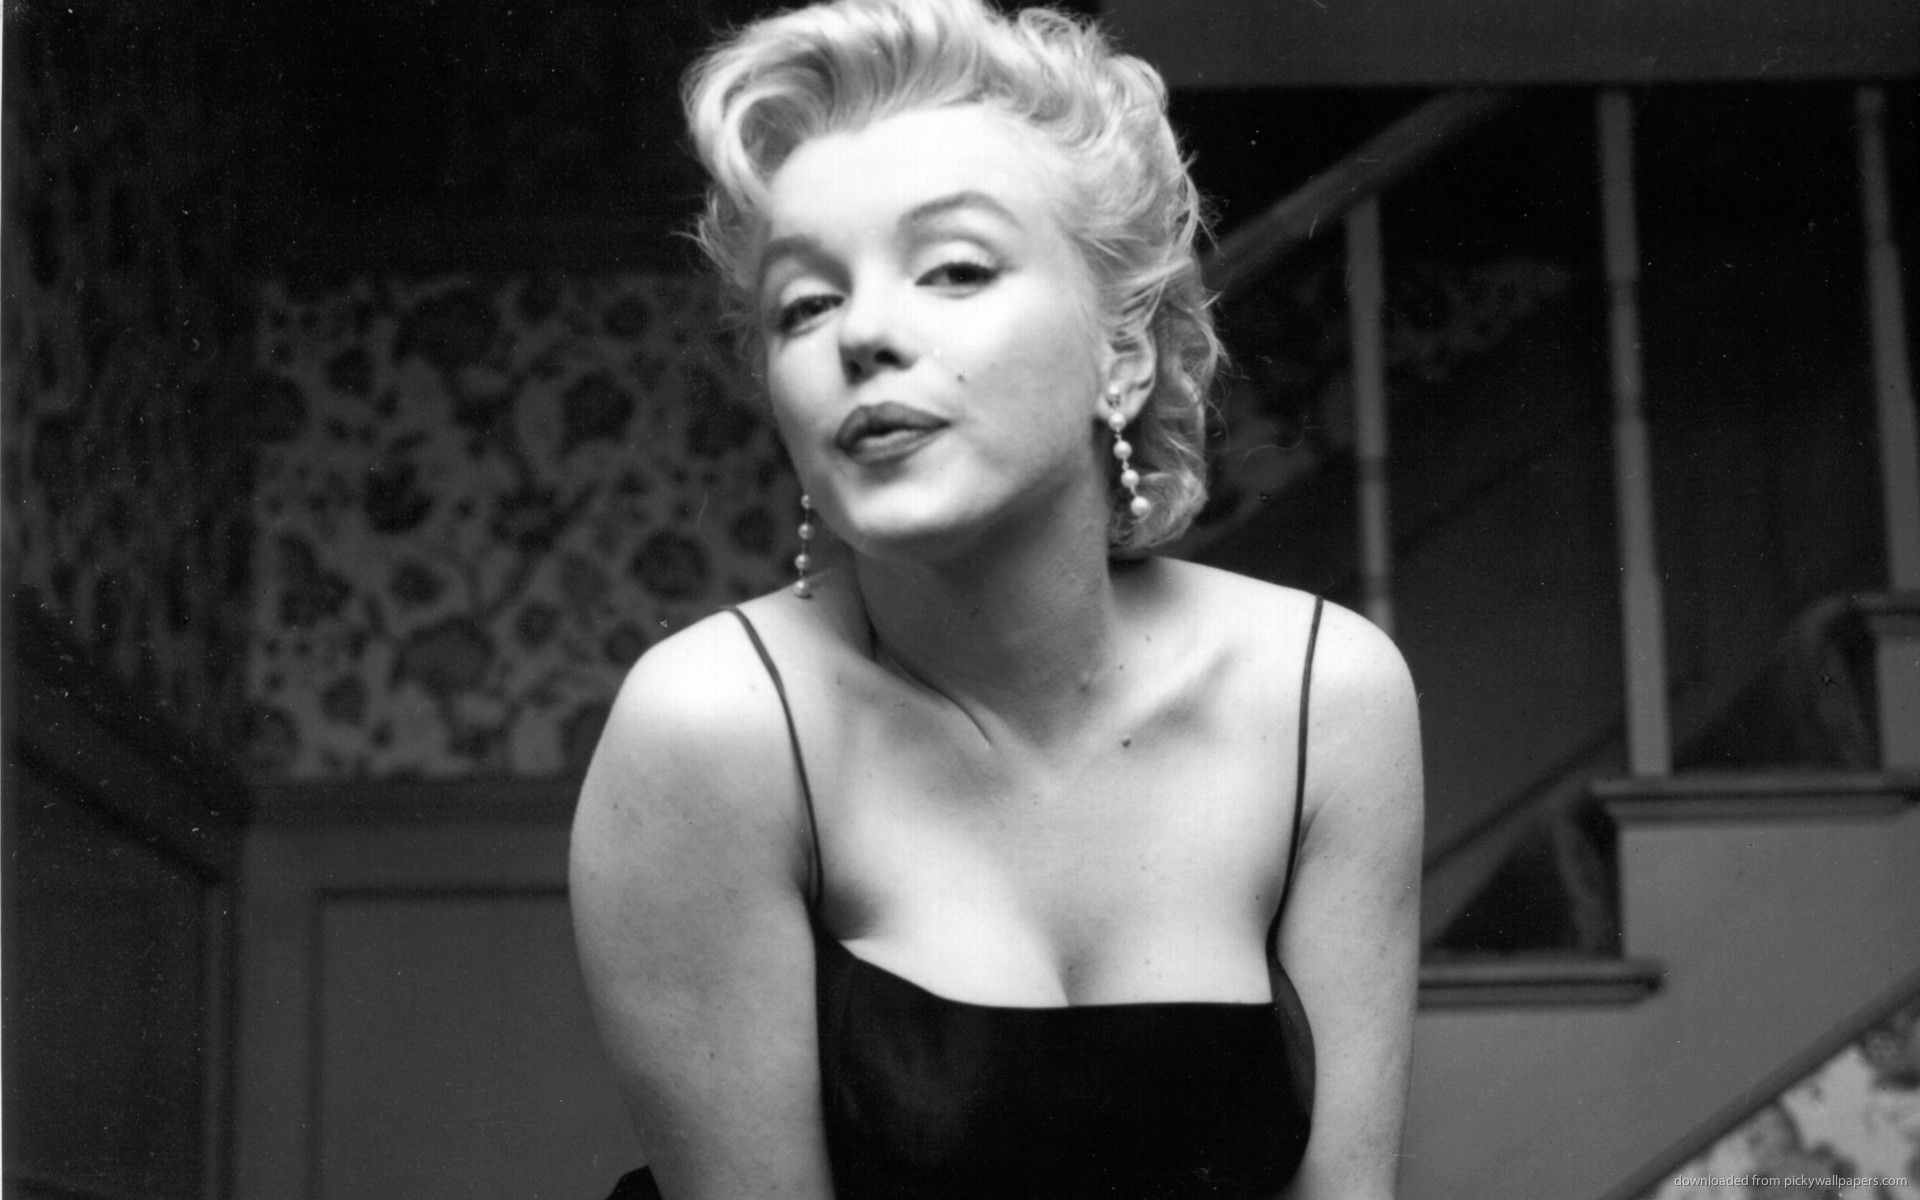 Marilyn Monroe’s Last Words